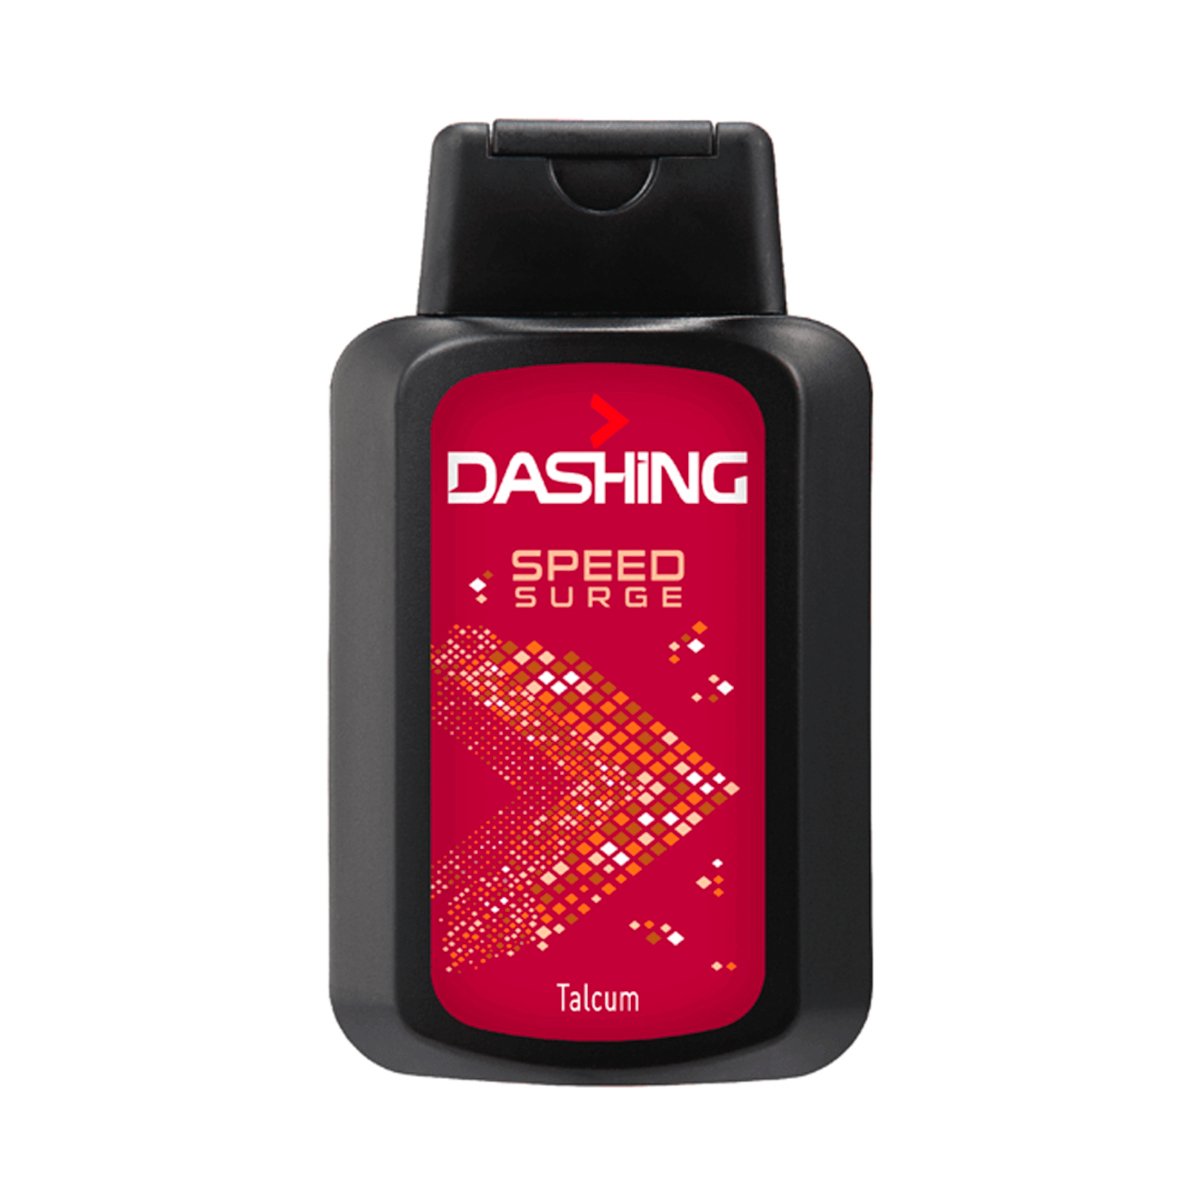 Dashing Speed Surge Talcum 150g